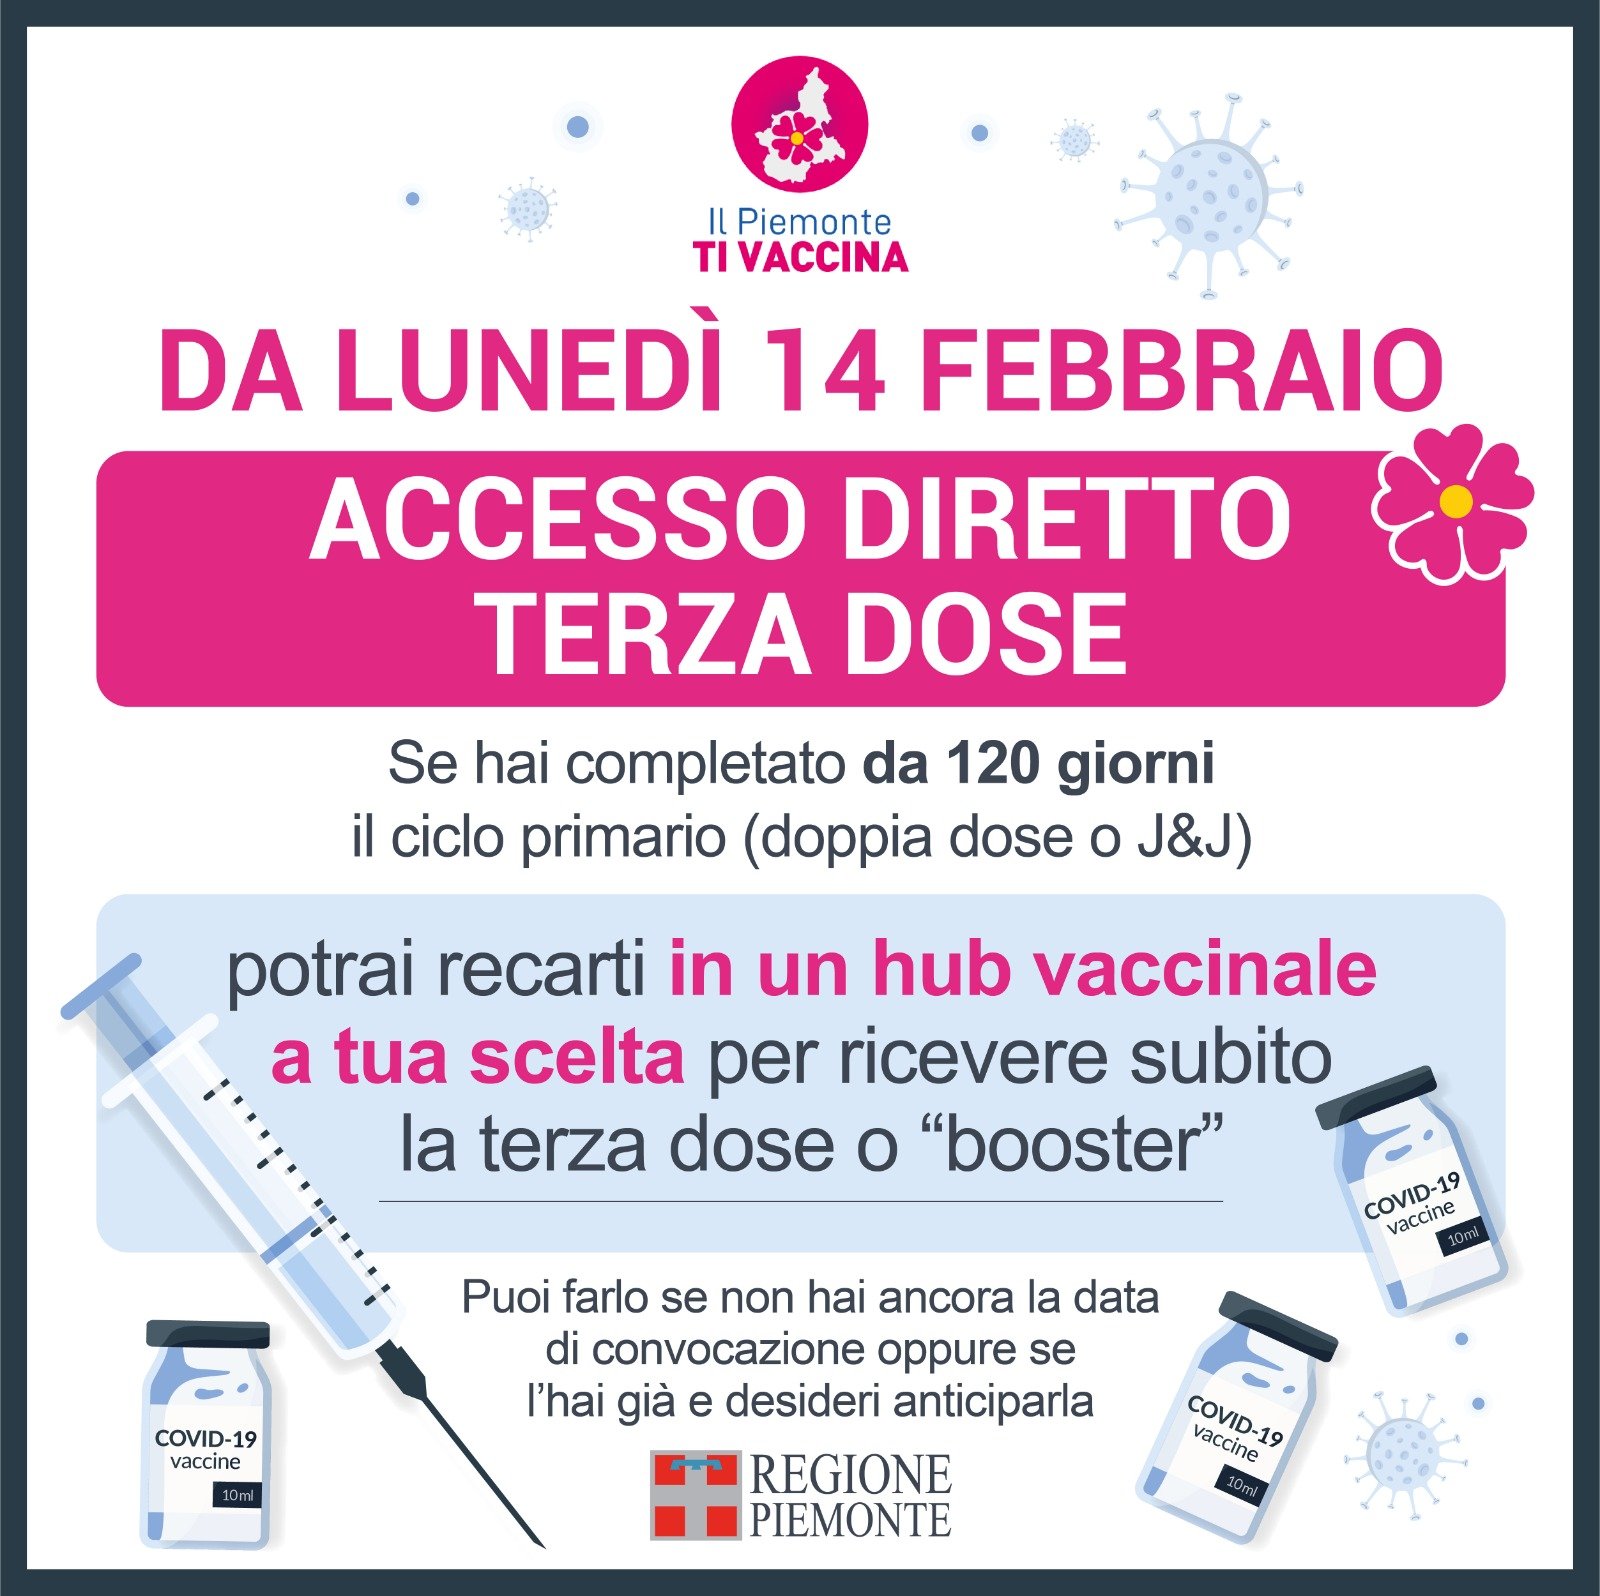 Covid: in Piemonte dal lunedì 14 febbraio accesso diretto per la terza dose